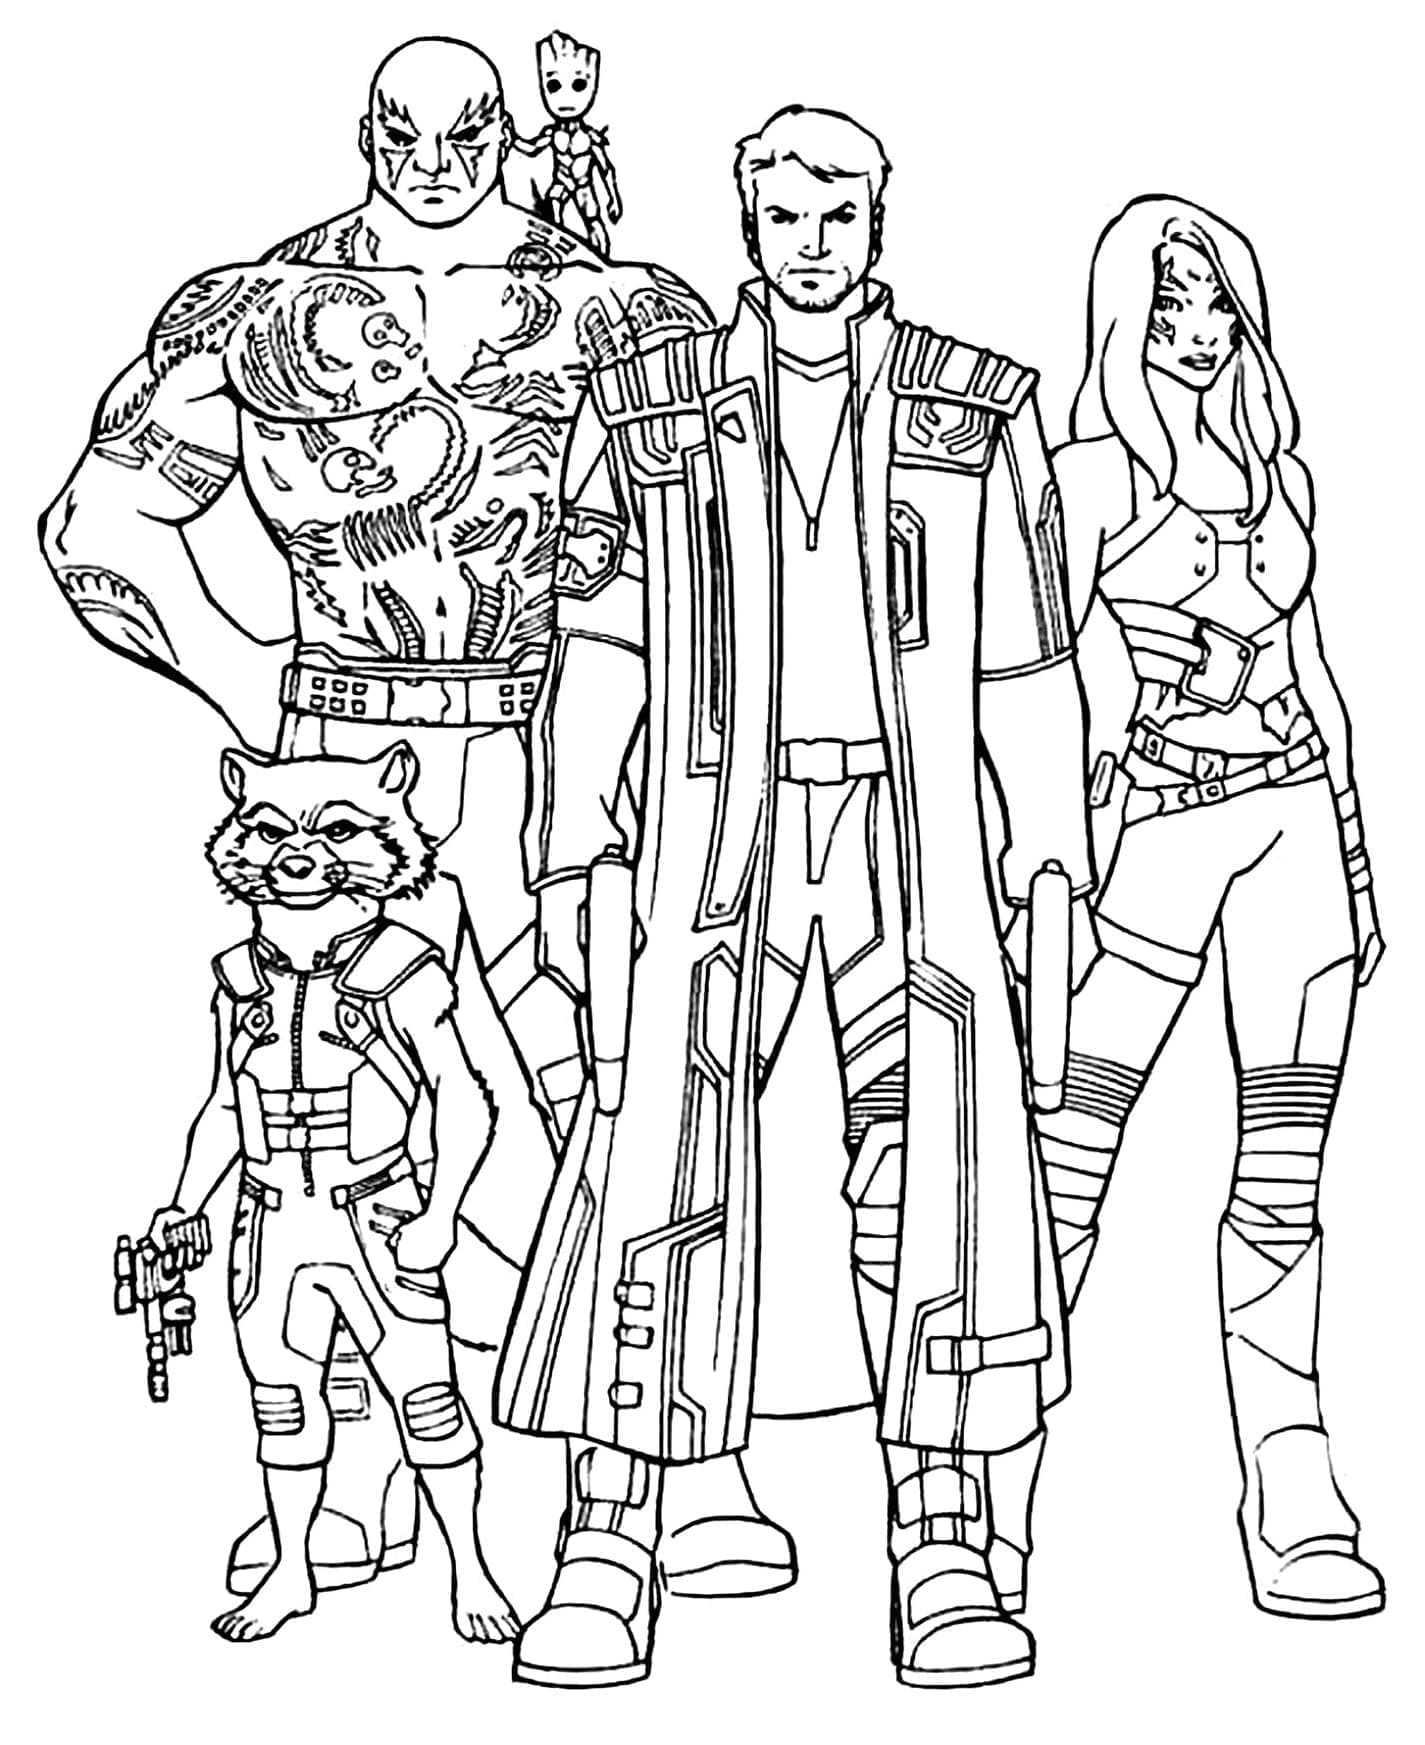 Marvel Les Gardiens de la Galaxie coloring page